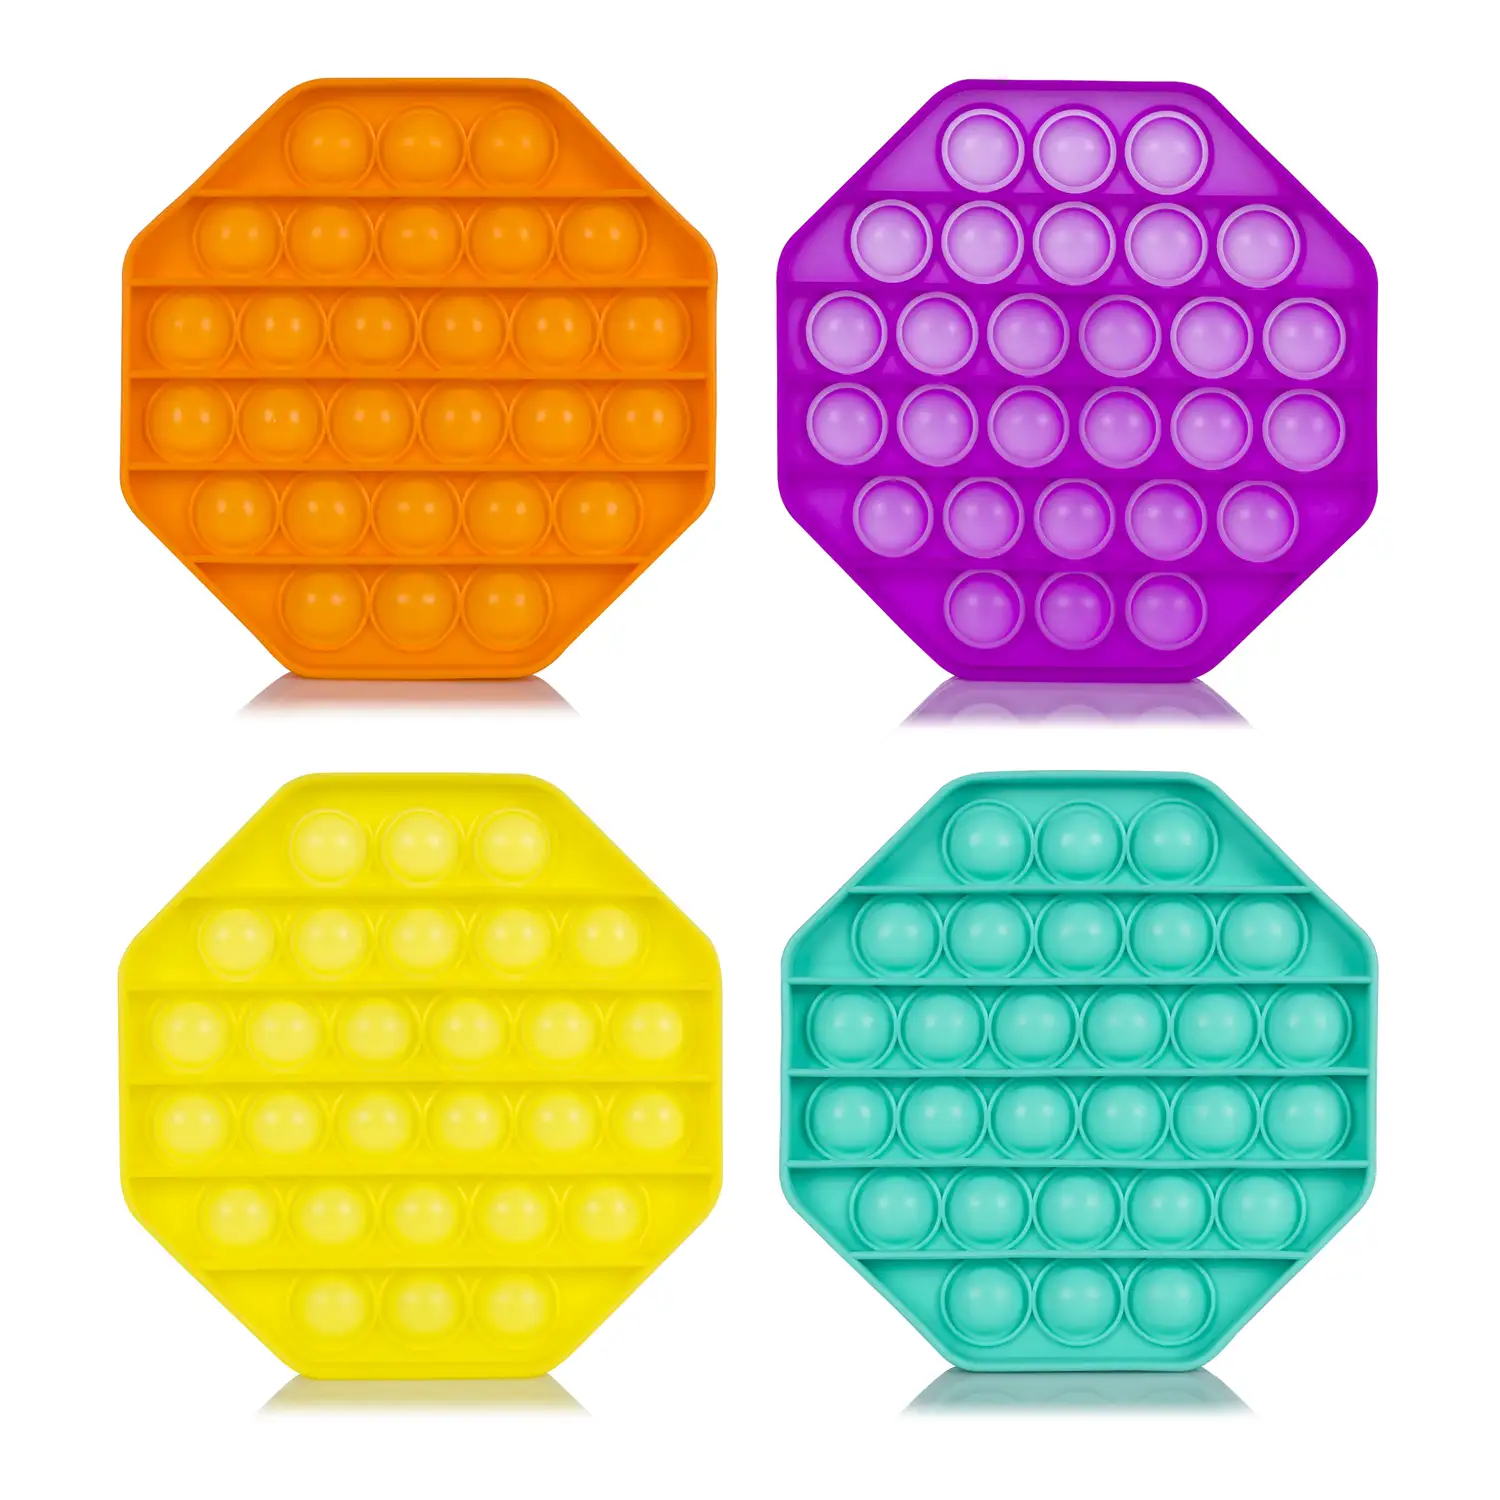 Bubble Pop It juguete sensitivo desestresante, burbujas de silicona para apretar y pulsar. Diseño octogonal. Colores aleatorios.